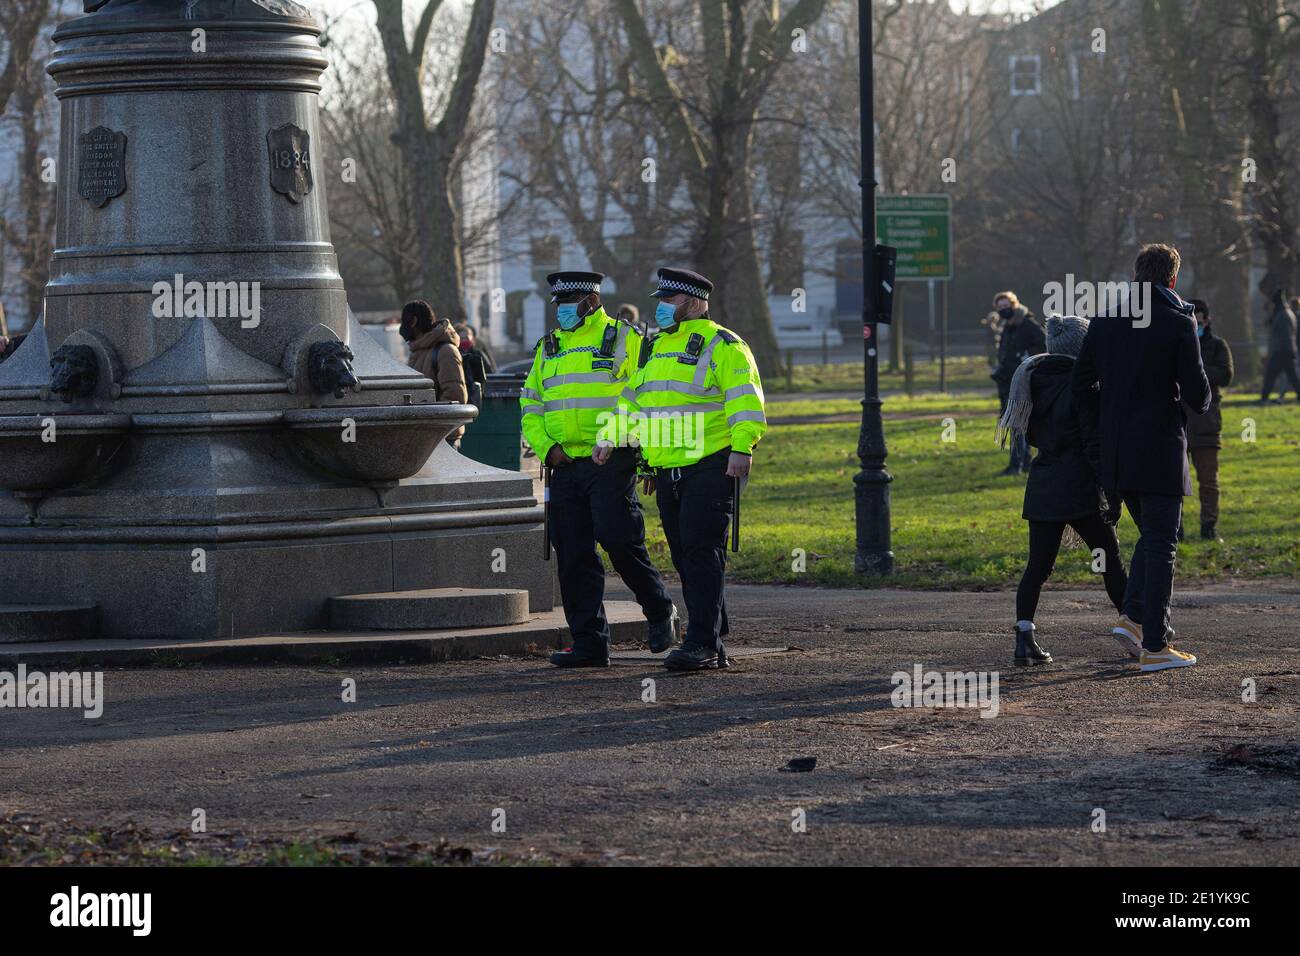 Los agentes de policía llevaban máscaras que patrullaban Clapham Common durante el tercer cierre de COVID 19 en Londres, Inglaterra. Foto de stock